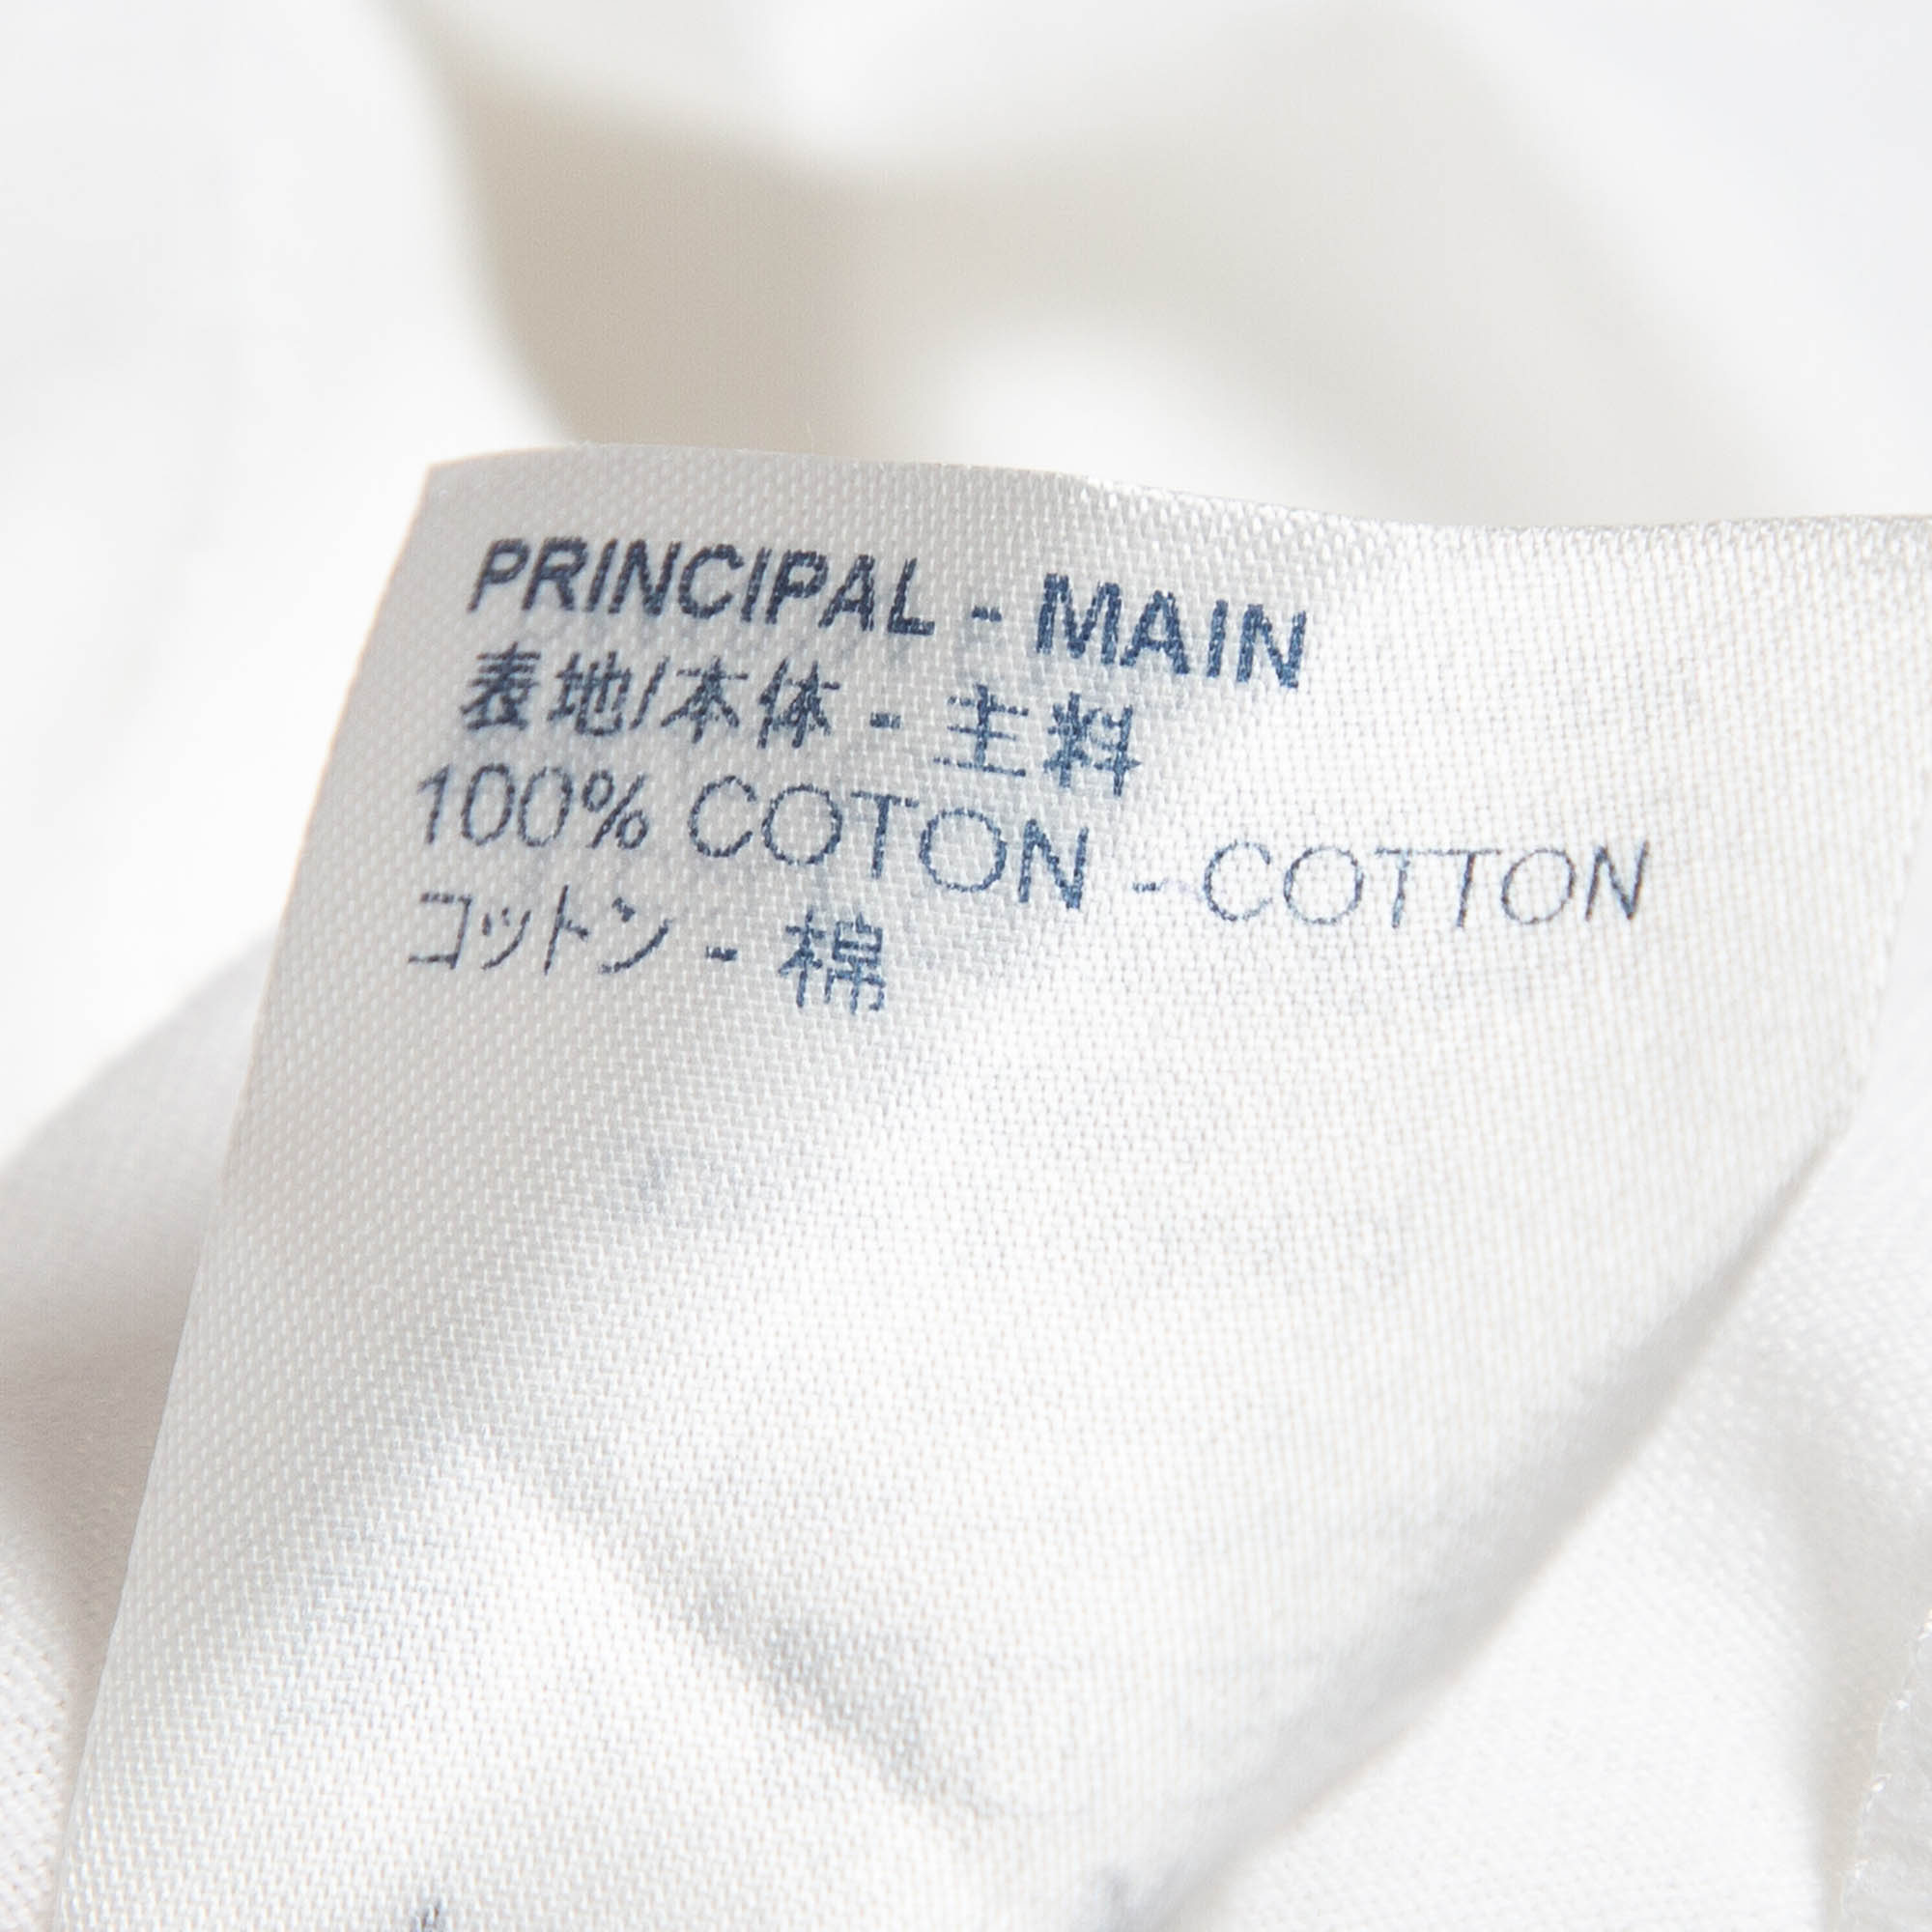 Louis Vuitton White Varsity Print Cotton Aloha T-Shirt S